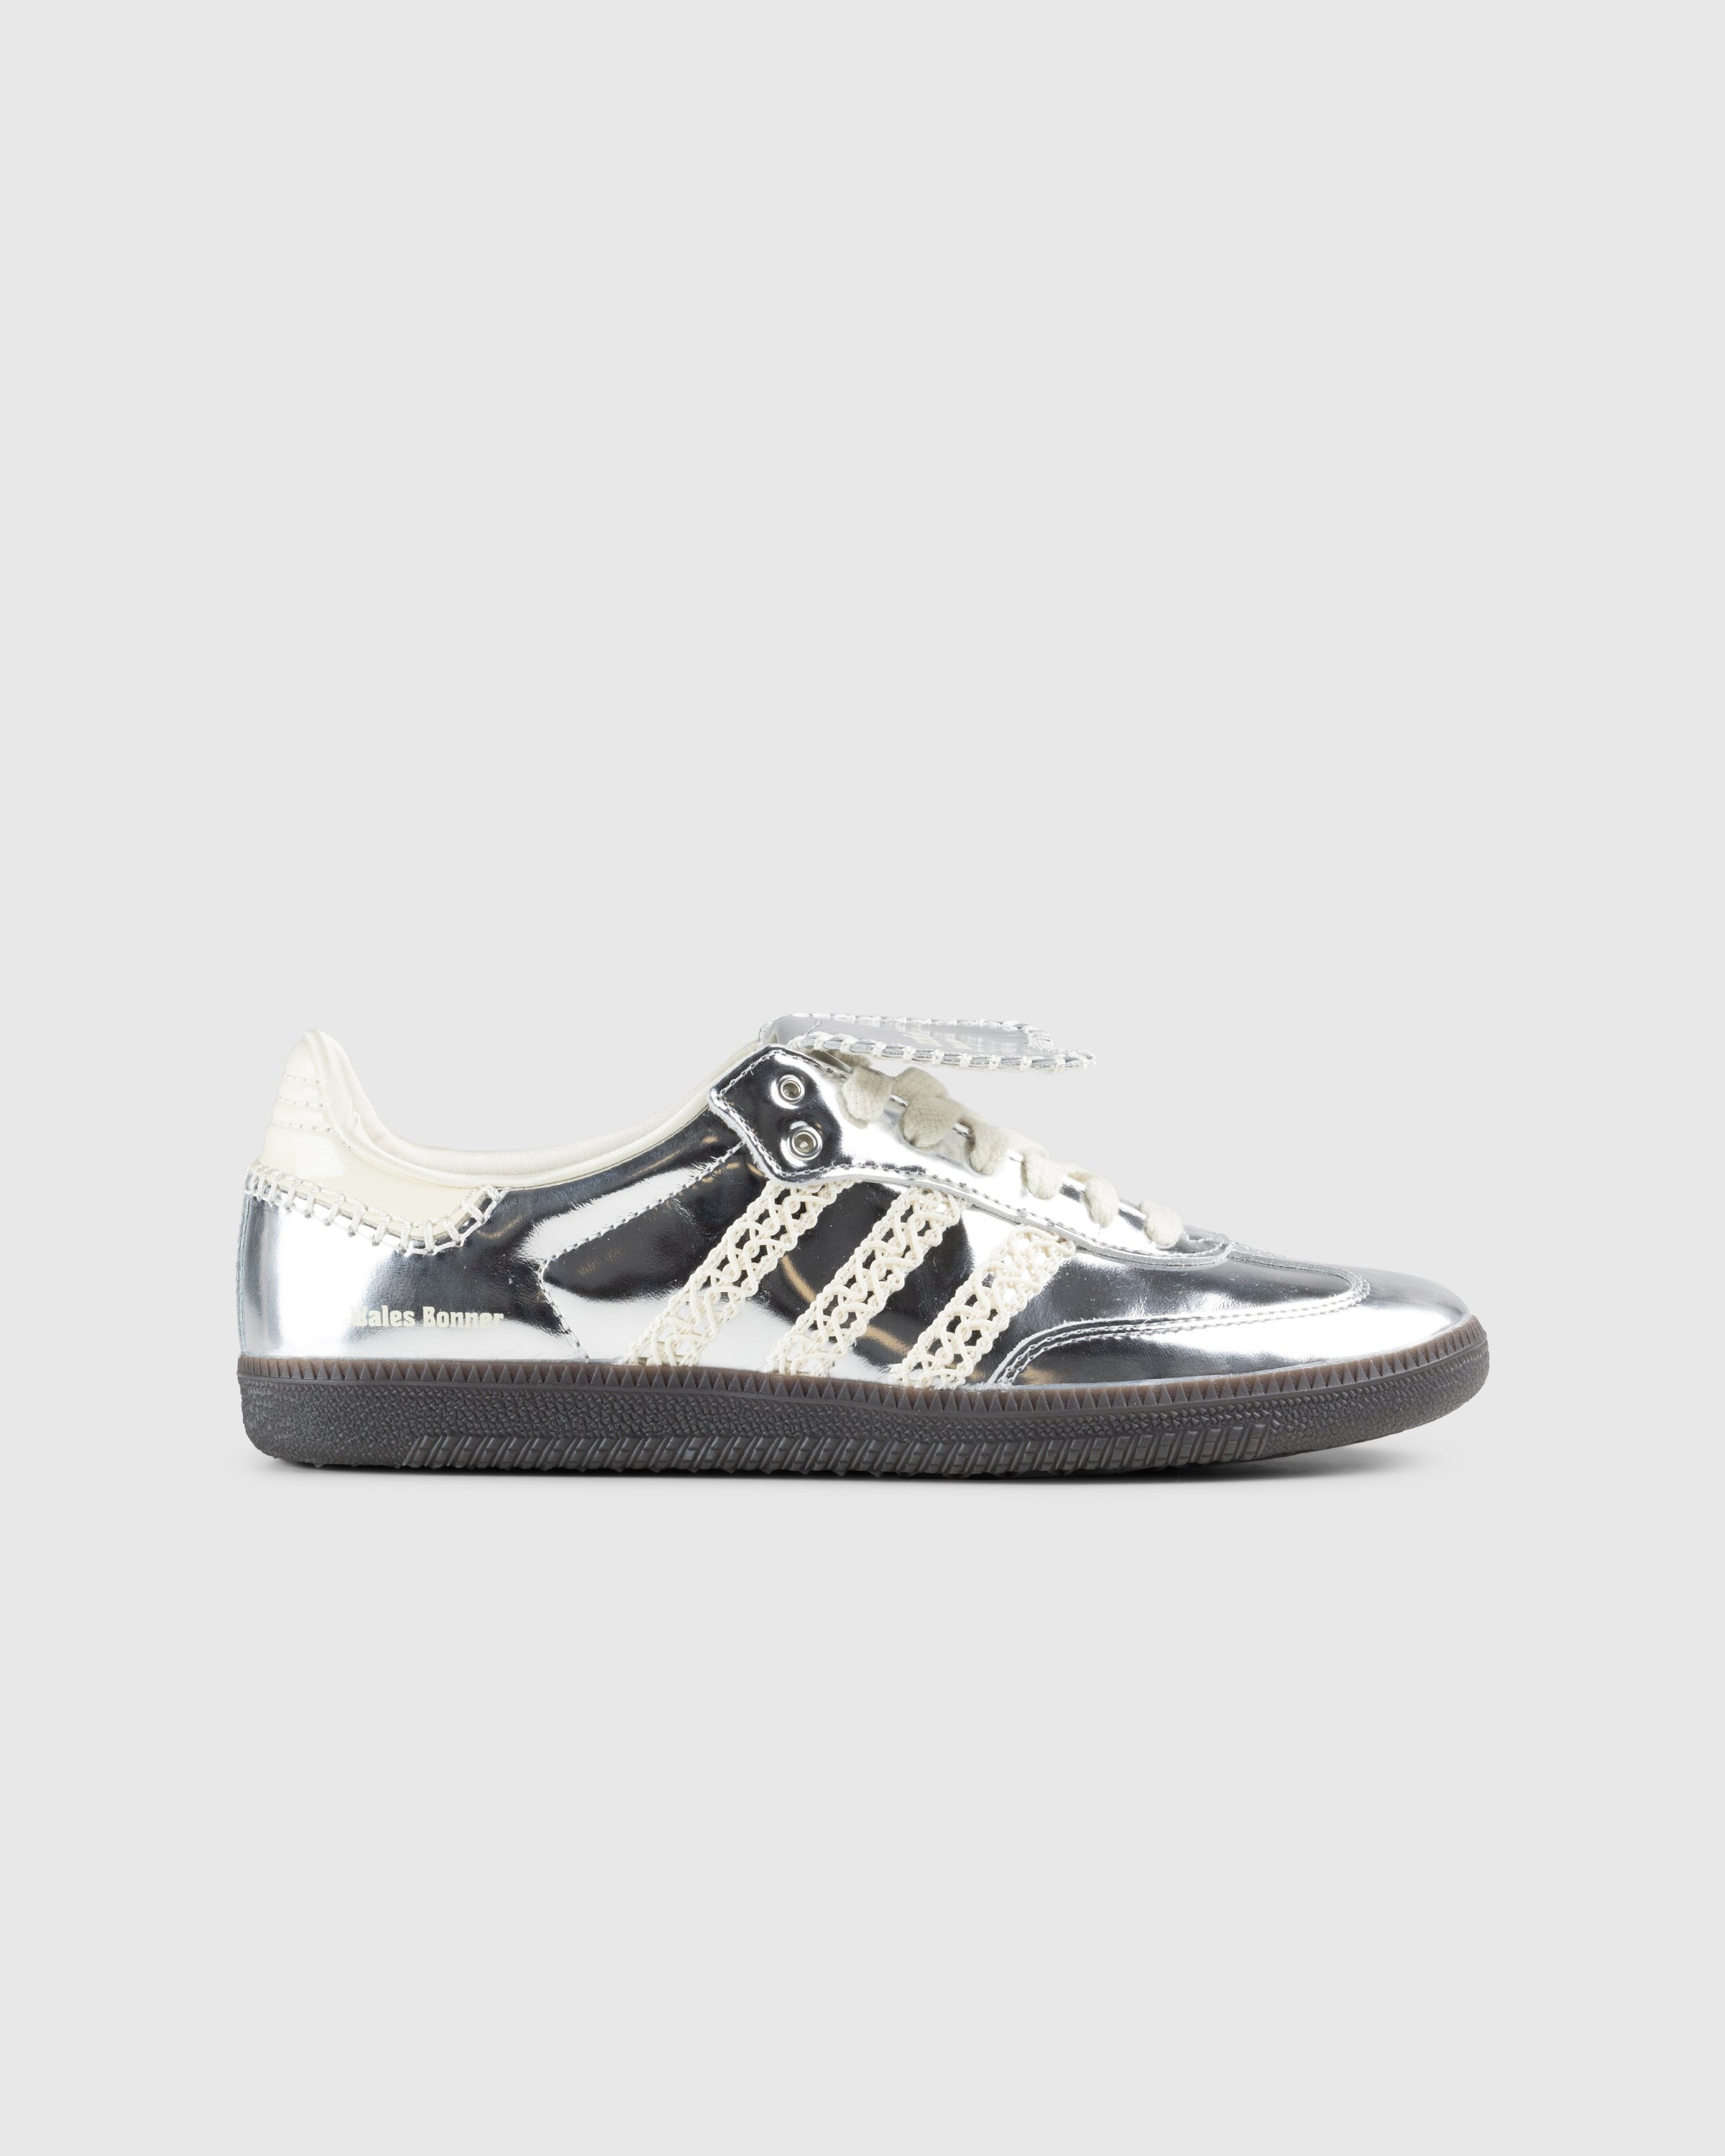 Adidas x Wales Bonner - Samba Metallic Silver/Cream White/Grey - Footwear - Silver - Image 1